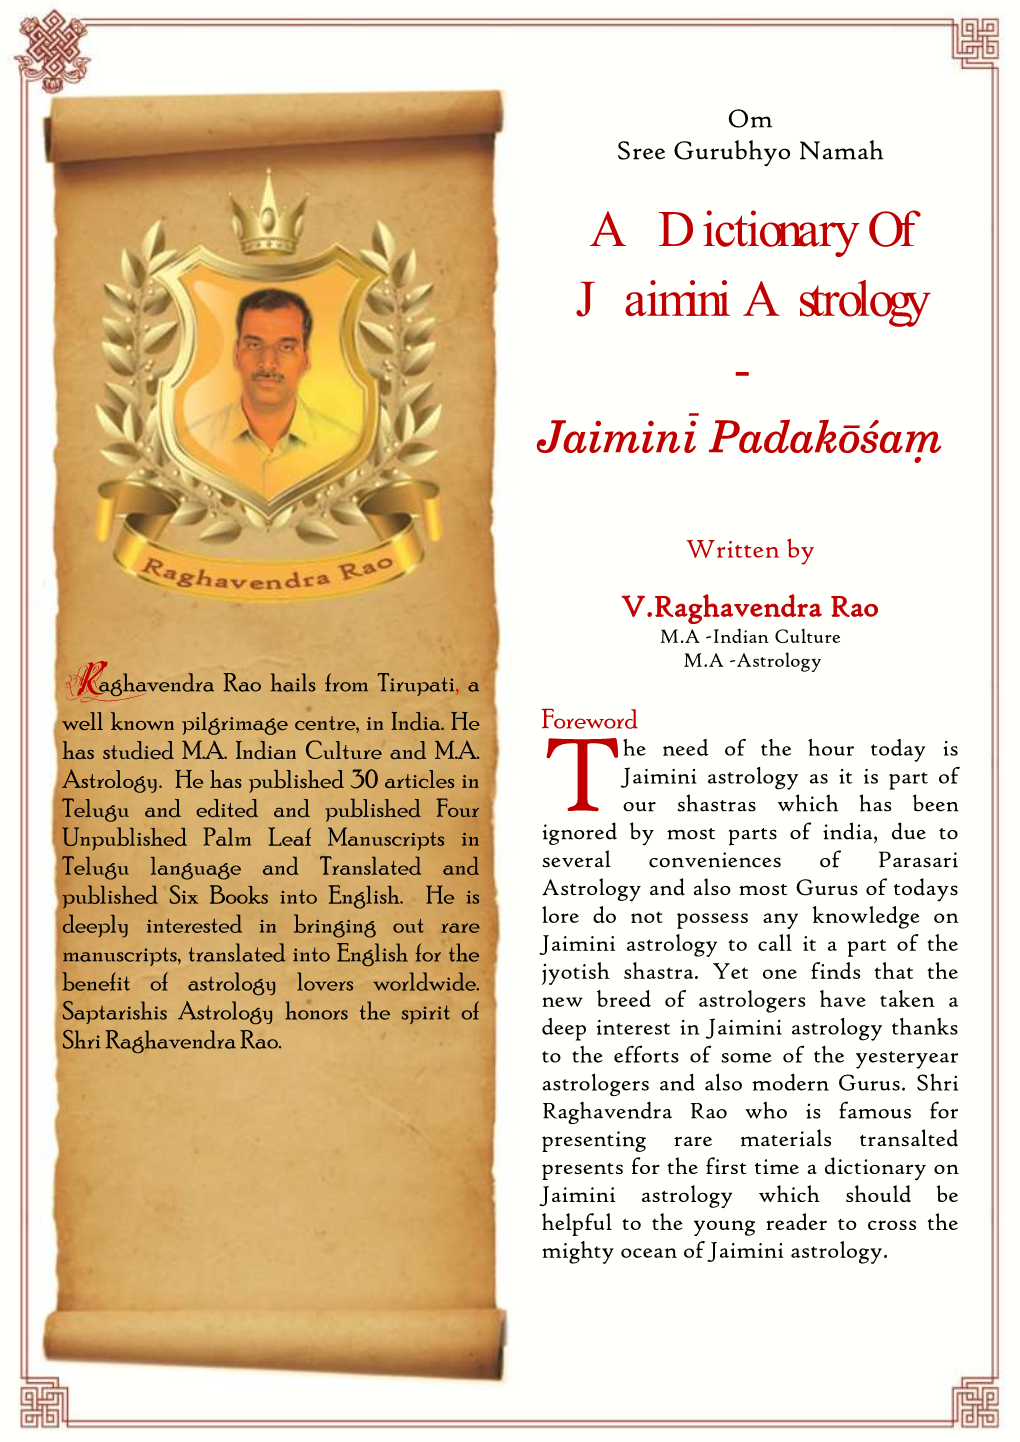 A Dictionary of Jaimini Astrology